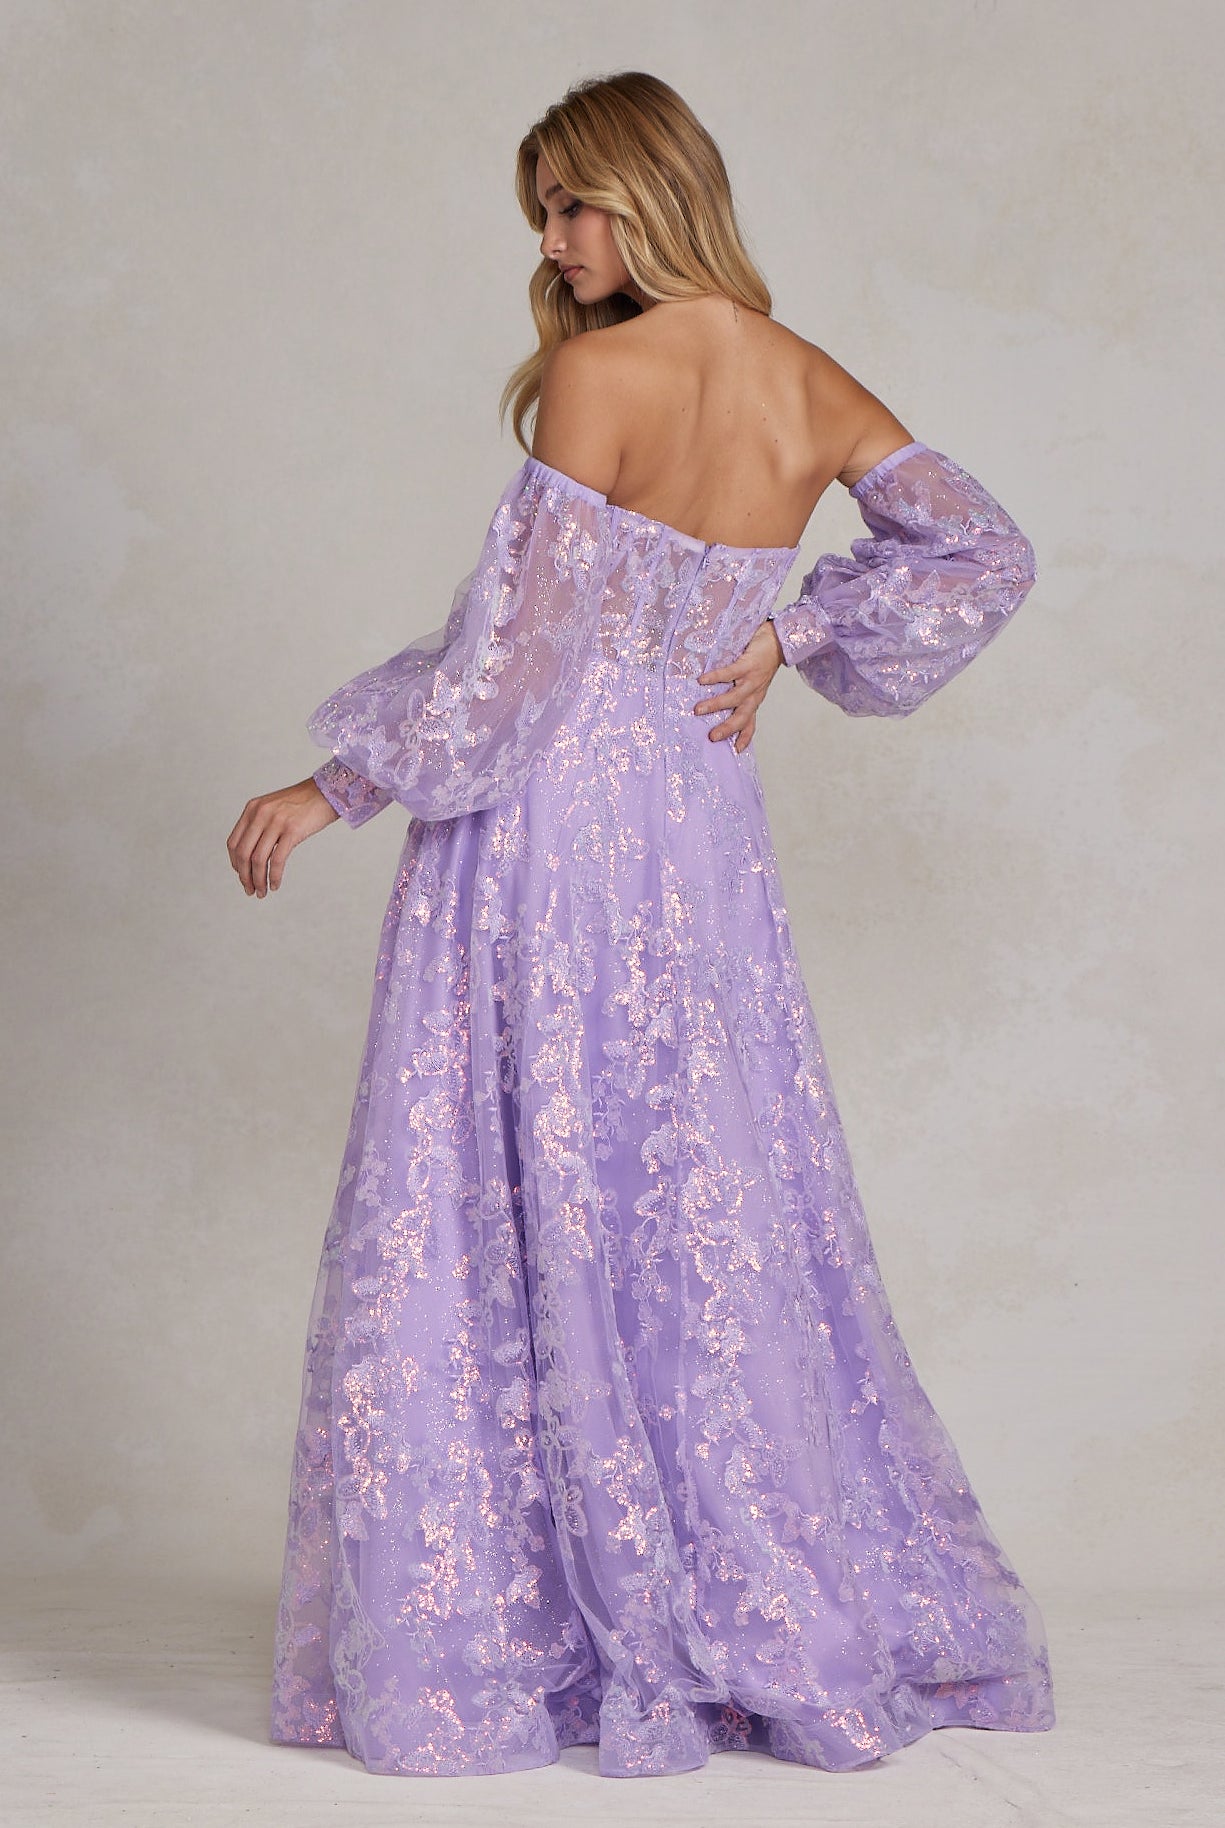 Off Shoulder Sweetheart Sheer Bodice Side Slit Open Back Long Prom Dress NXK1155-All Dresses-smcfashion.com